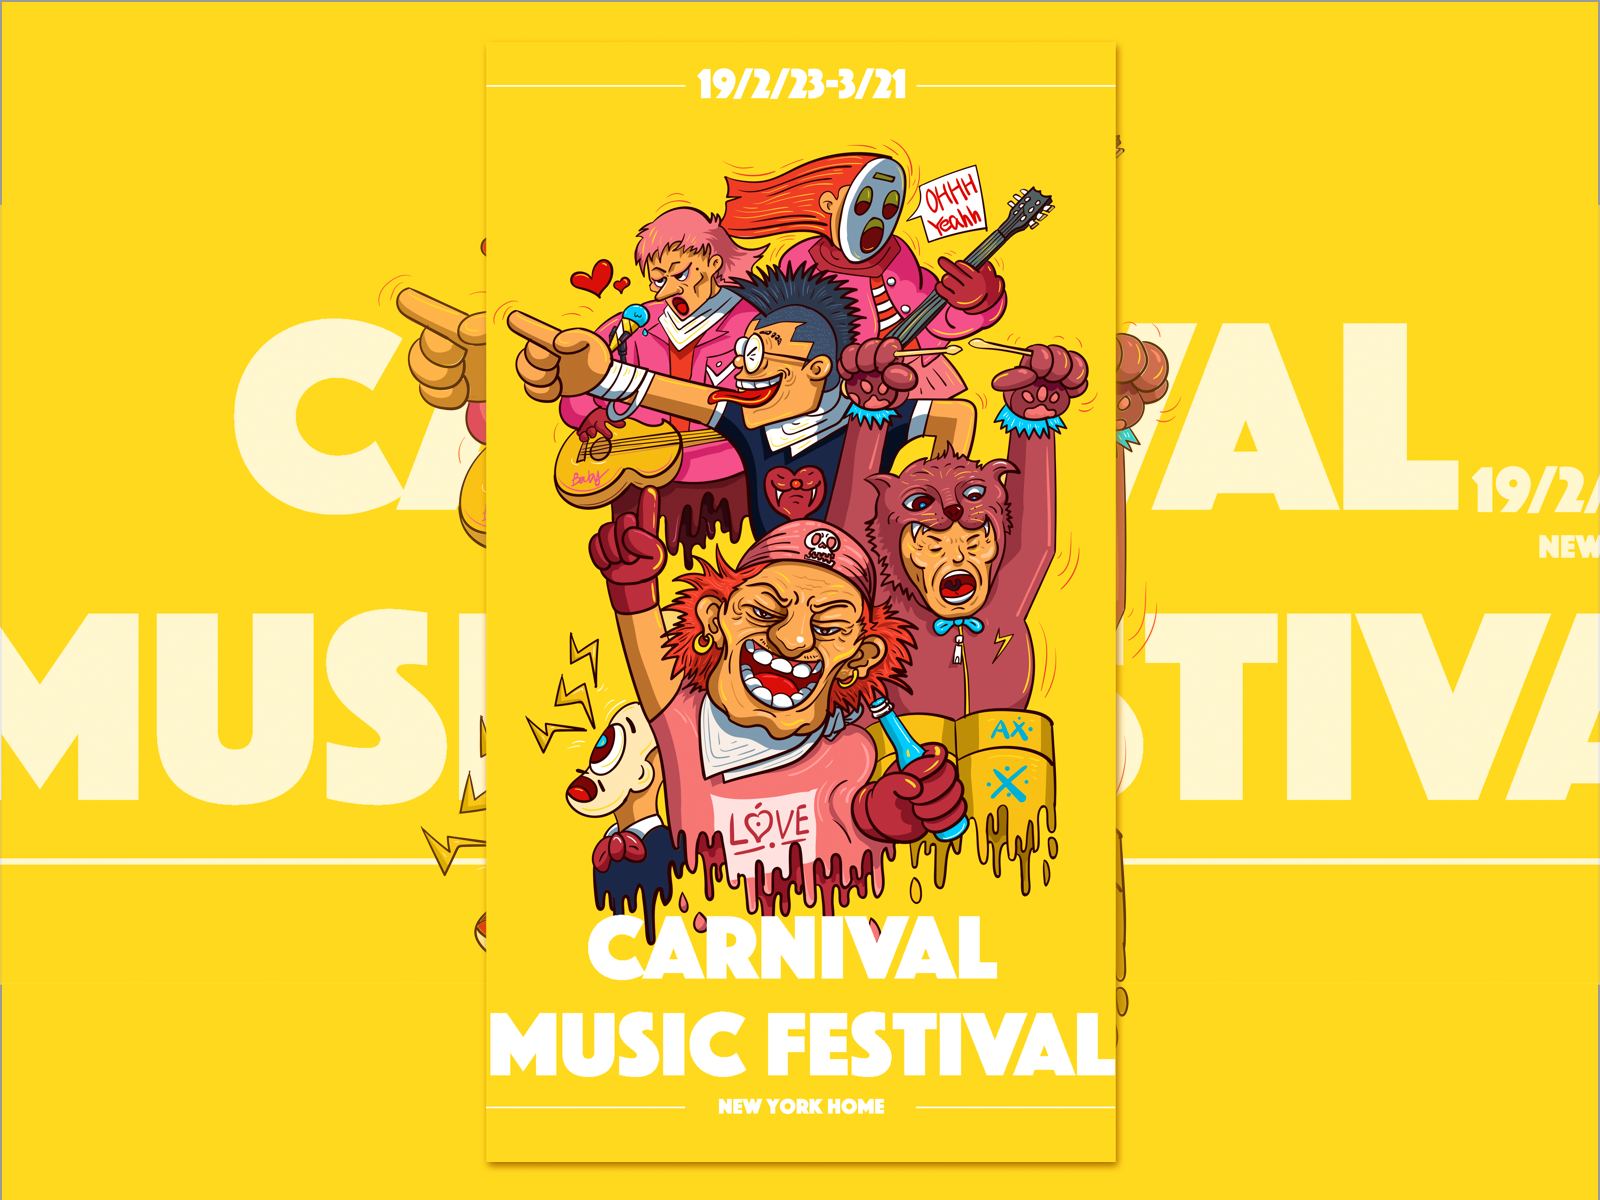 疯狂音乐节—Crazy Music Festival by TUCCIANn for One Eighth on Dribbble